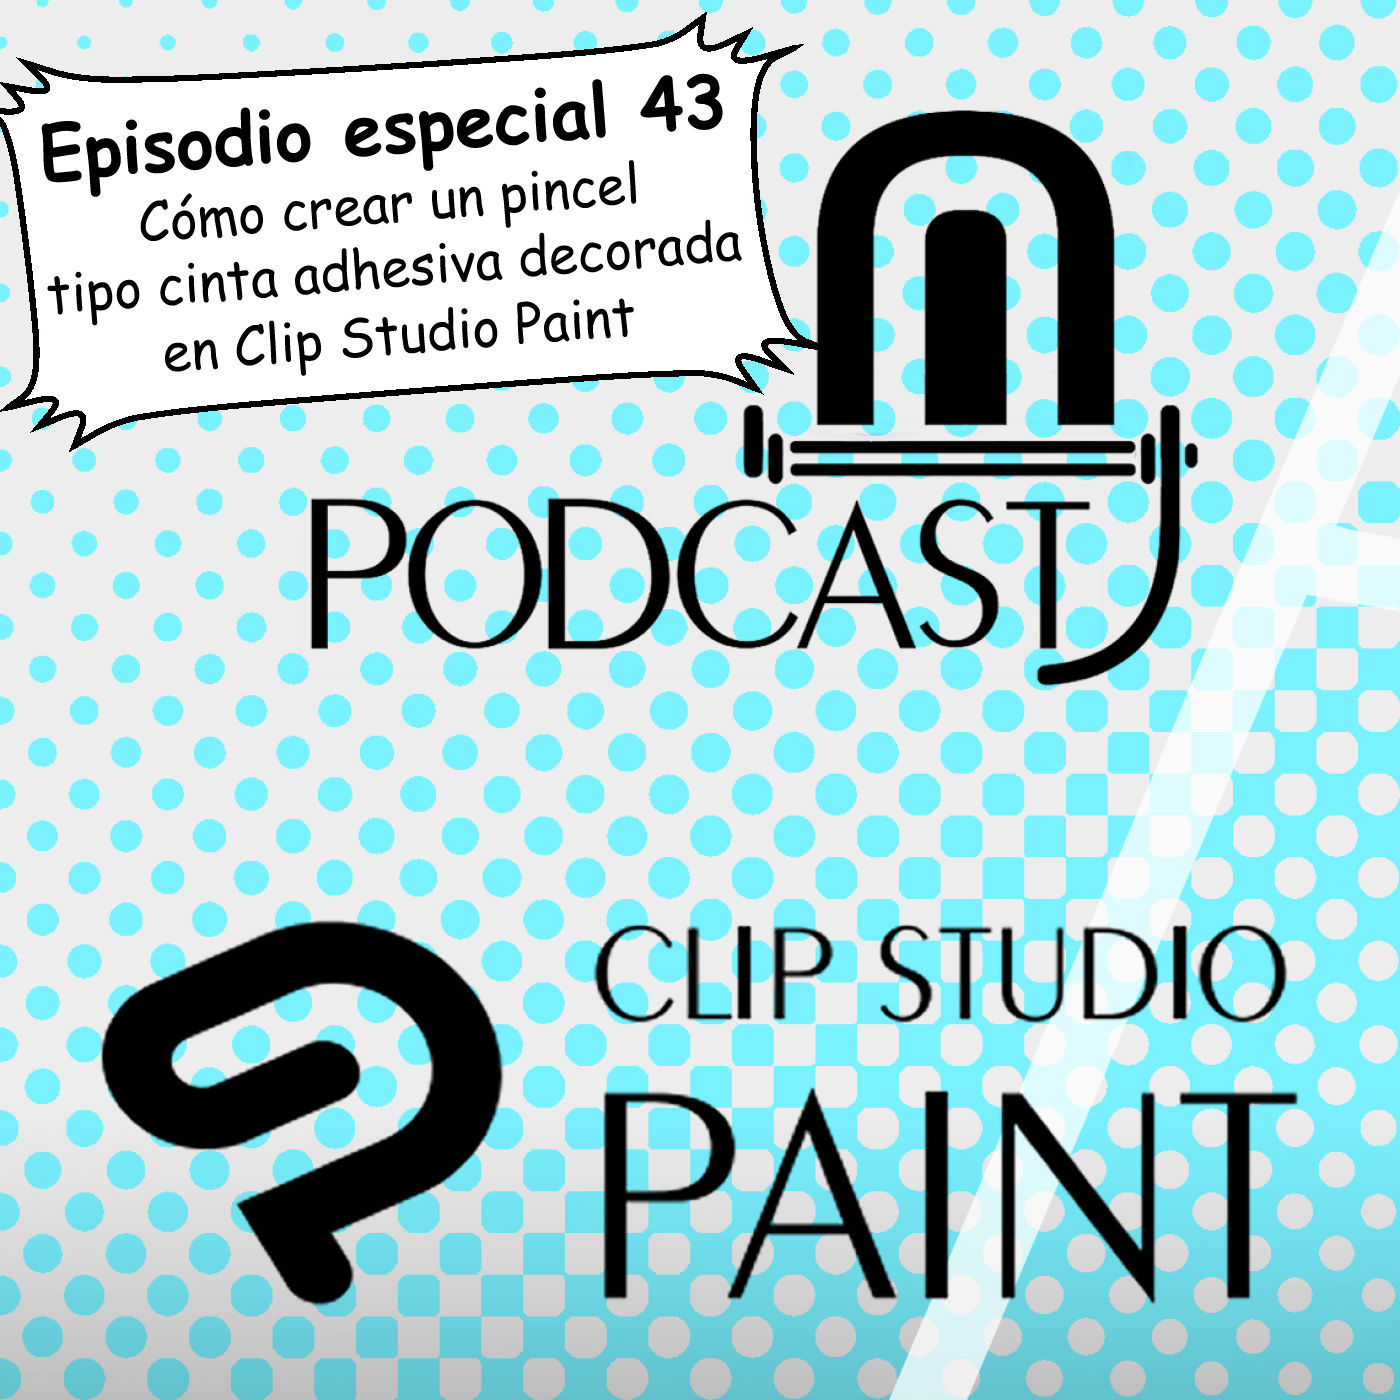 CSP especial 43. Cómo crear un pincel tipo cinta adhesiva decorada en Clip Studio Paint